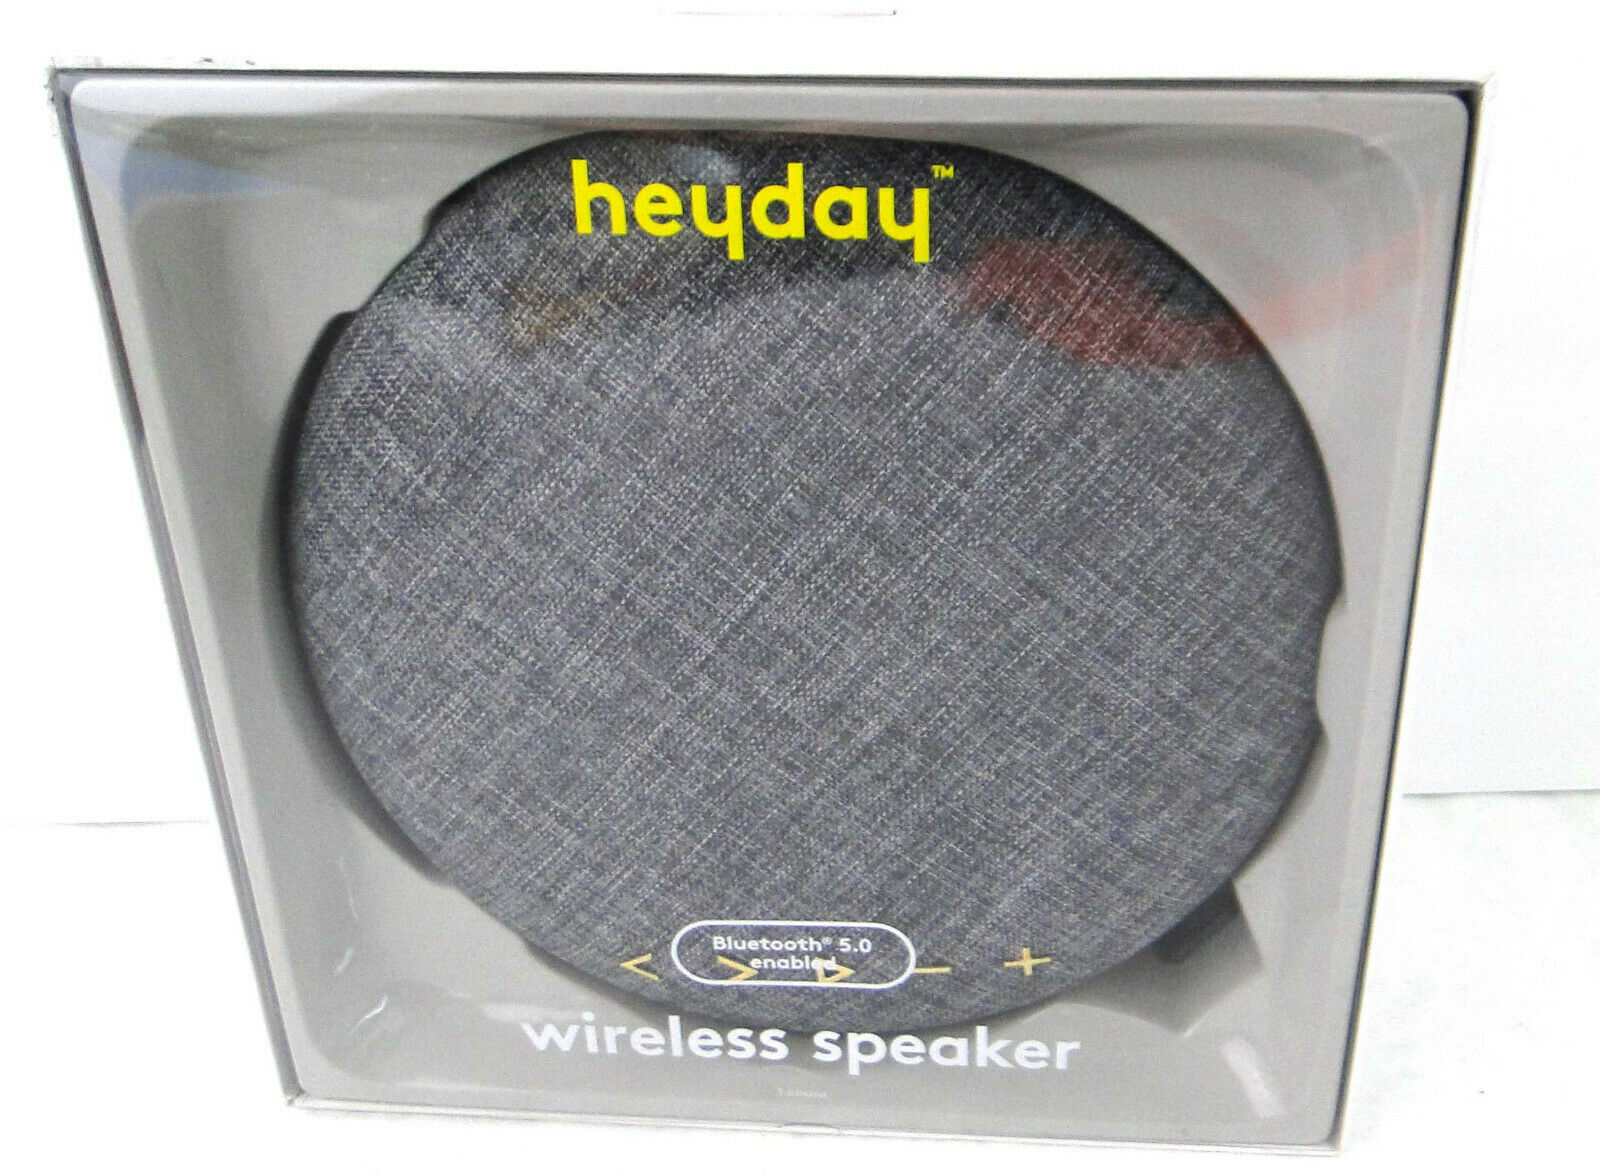 heyday Round Waterproof Portable Bluetooth Speaker - Black/Wood Grain